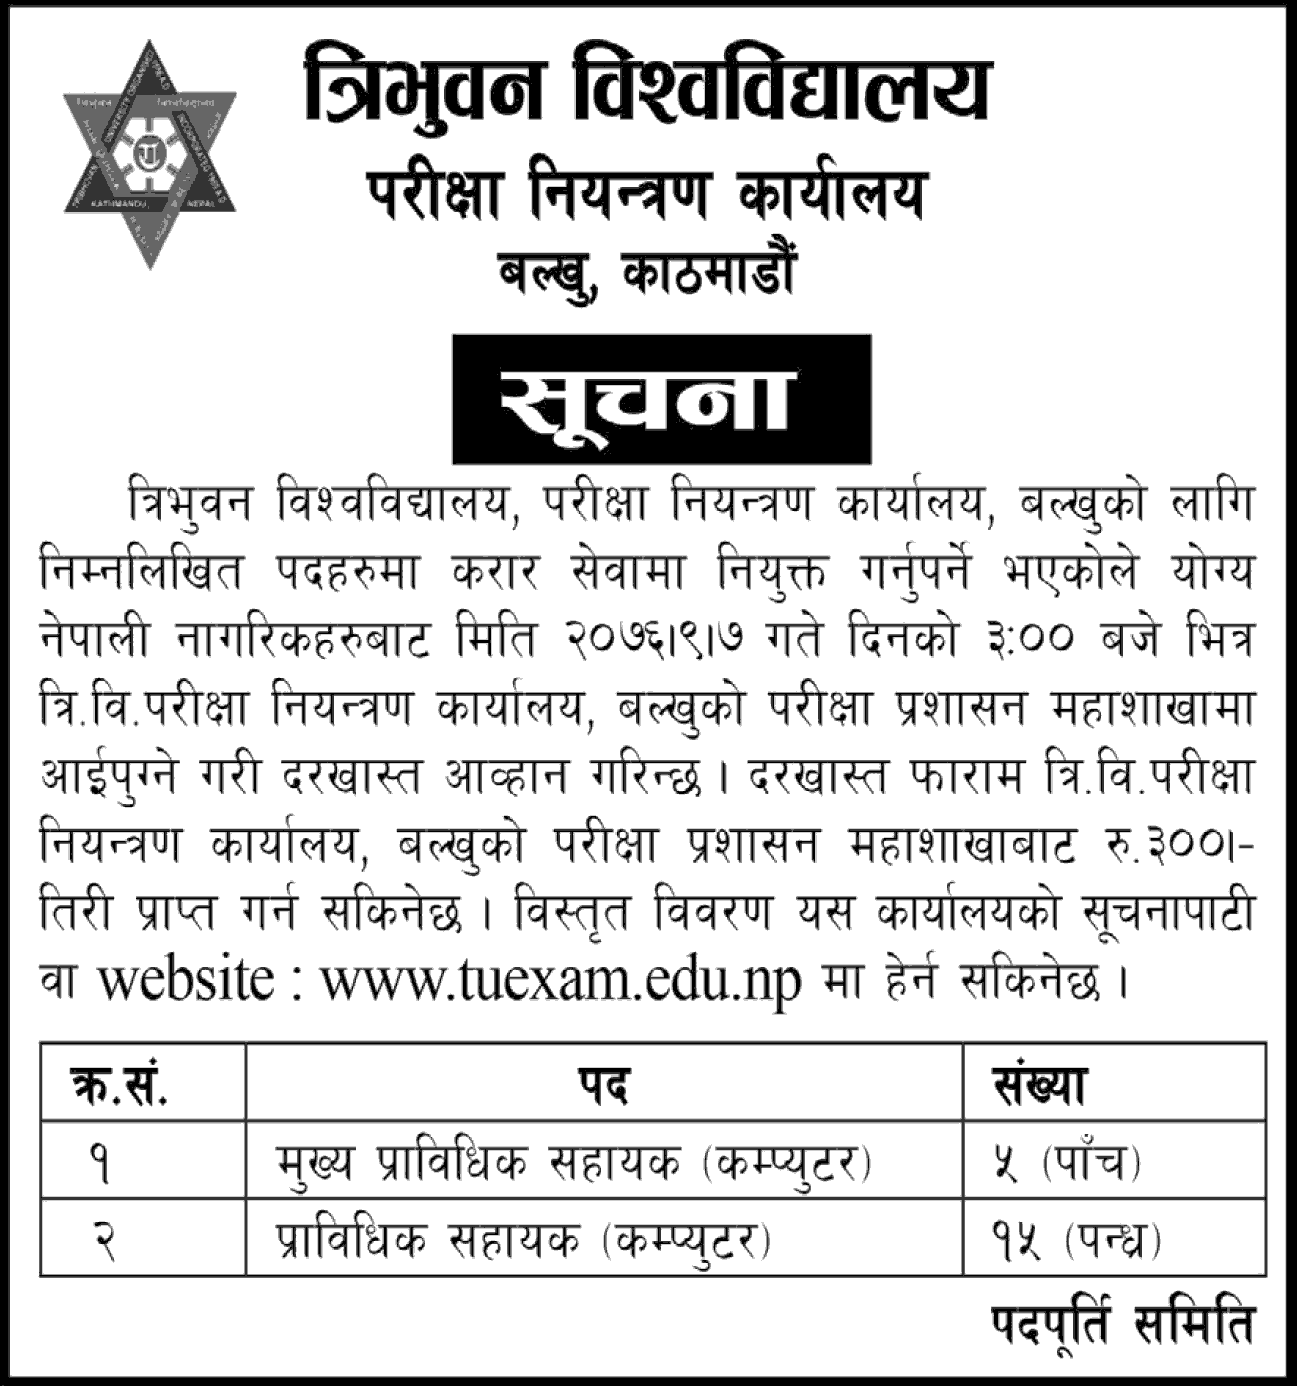 Tribhuvan University Vacancy Notice